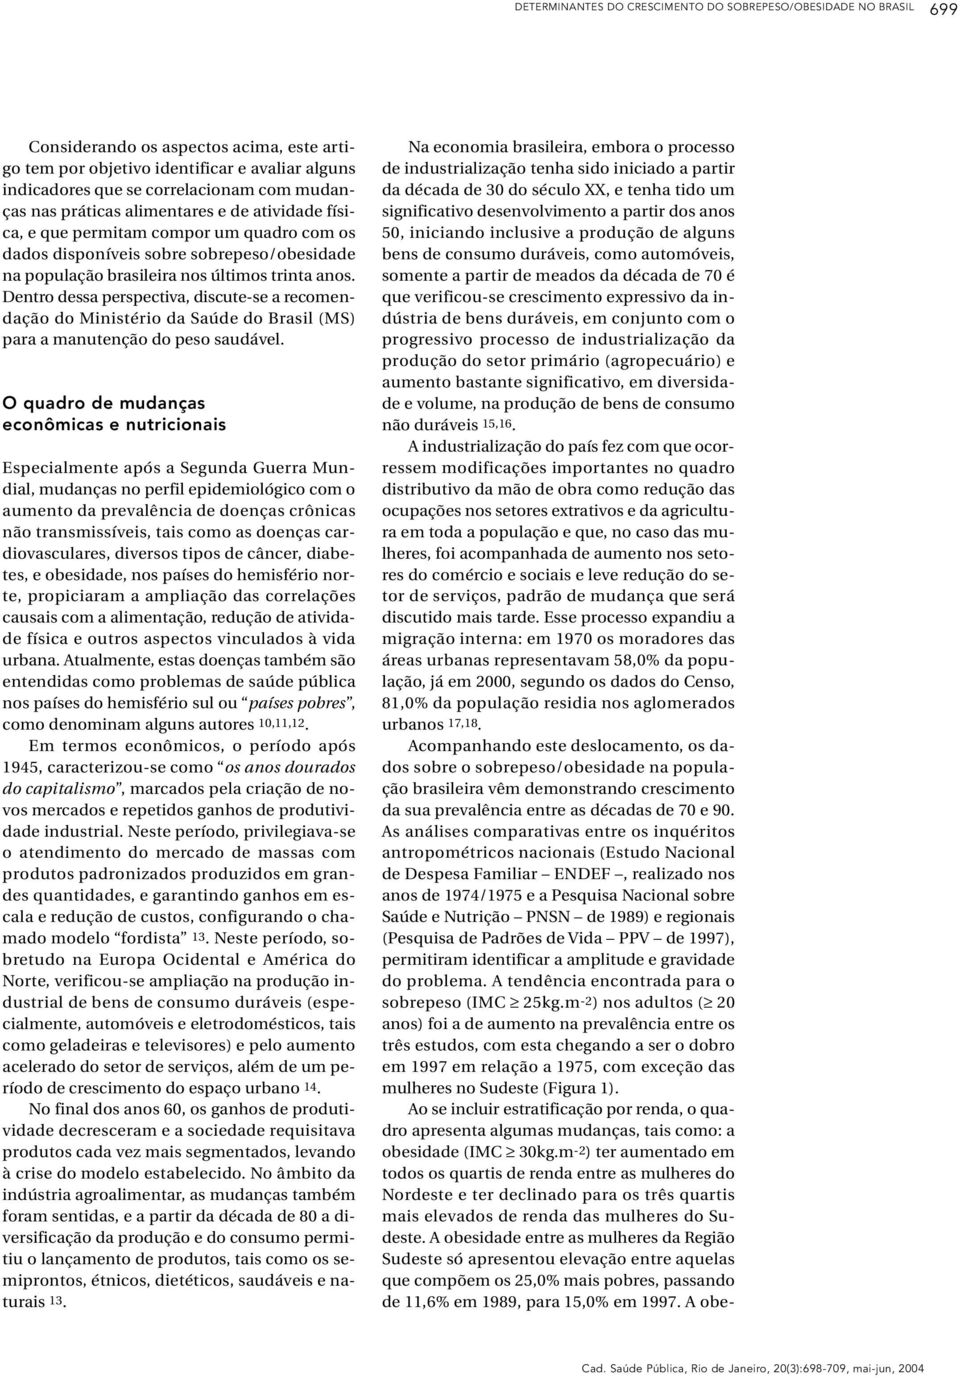 Dentro dessa perspectiva, discute-se a recomendação do Ministério da Saúde do Brasil (MS) para a manutenção do peso saudável.